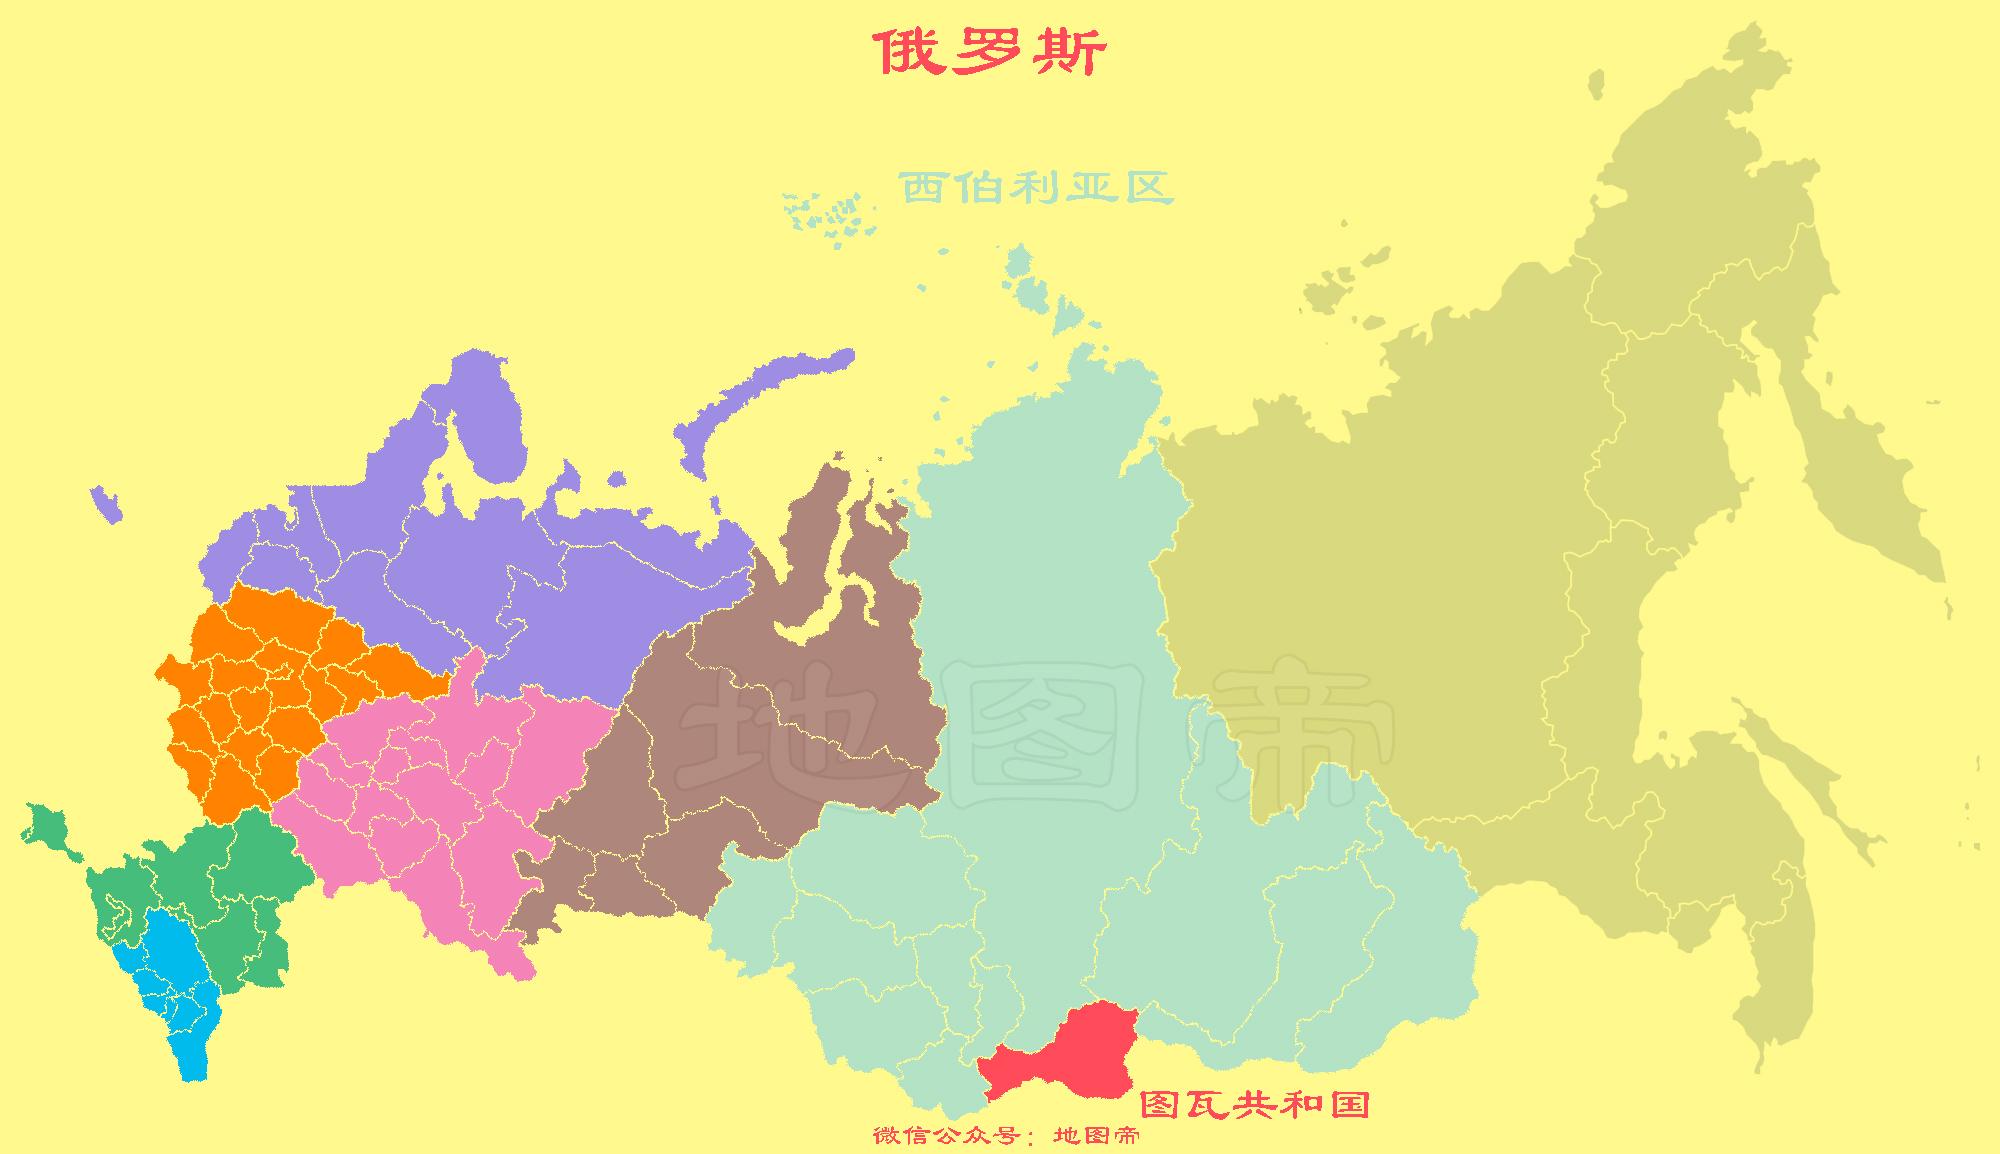 俄罗斯的三个共和国,和中国有着很深渊源